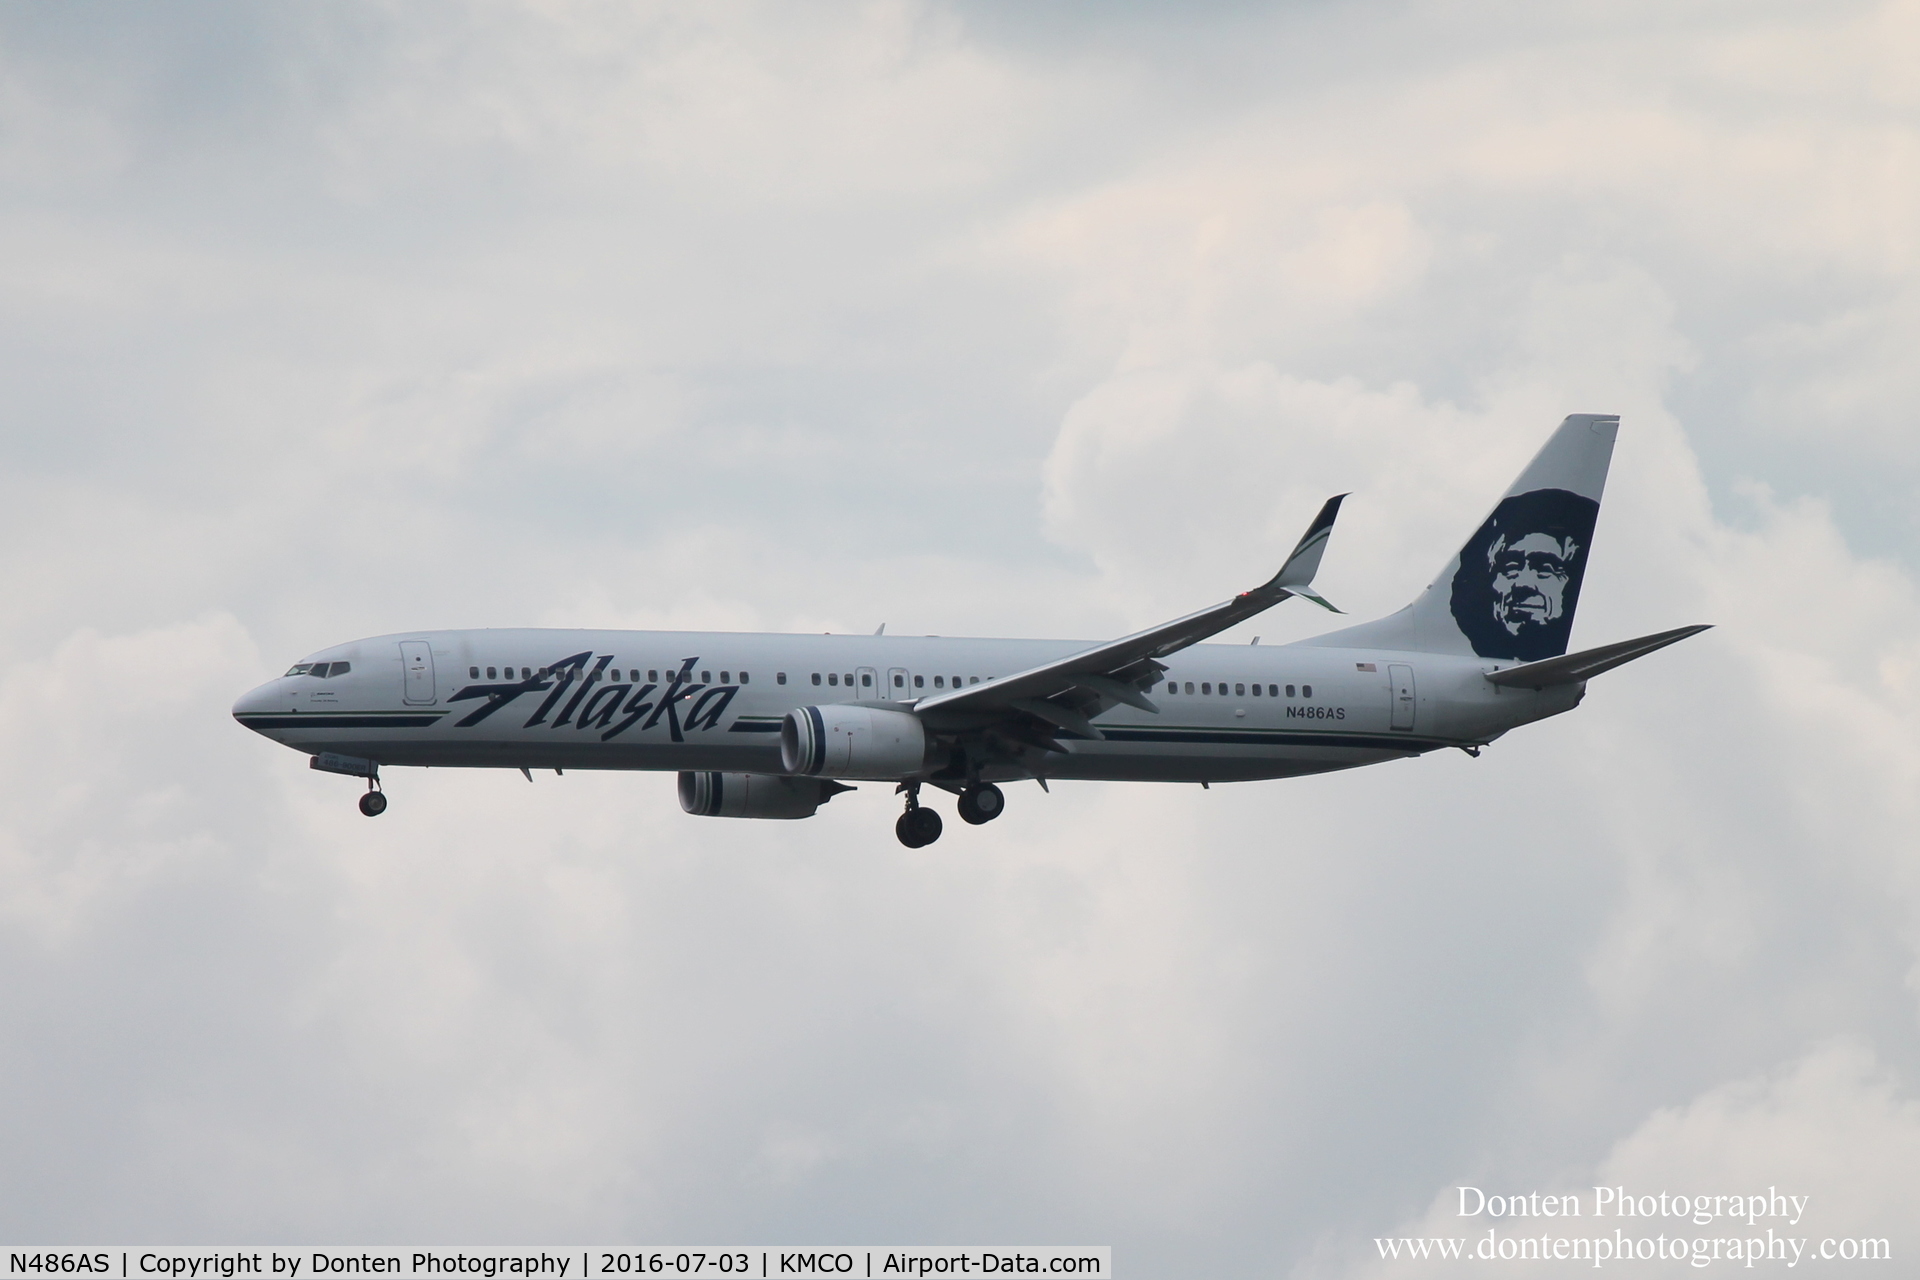 N486AS, 2015 Boeing 737-990/ER C/N 44107, Alaska Flight 16 (N486AS) arrives at Orlando International Airport following flight from Seattle-Tacoma International Airport